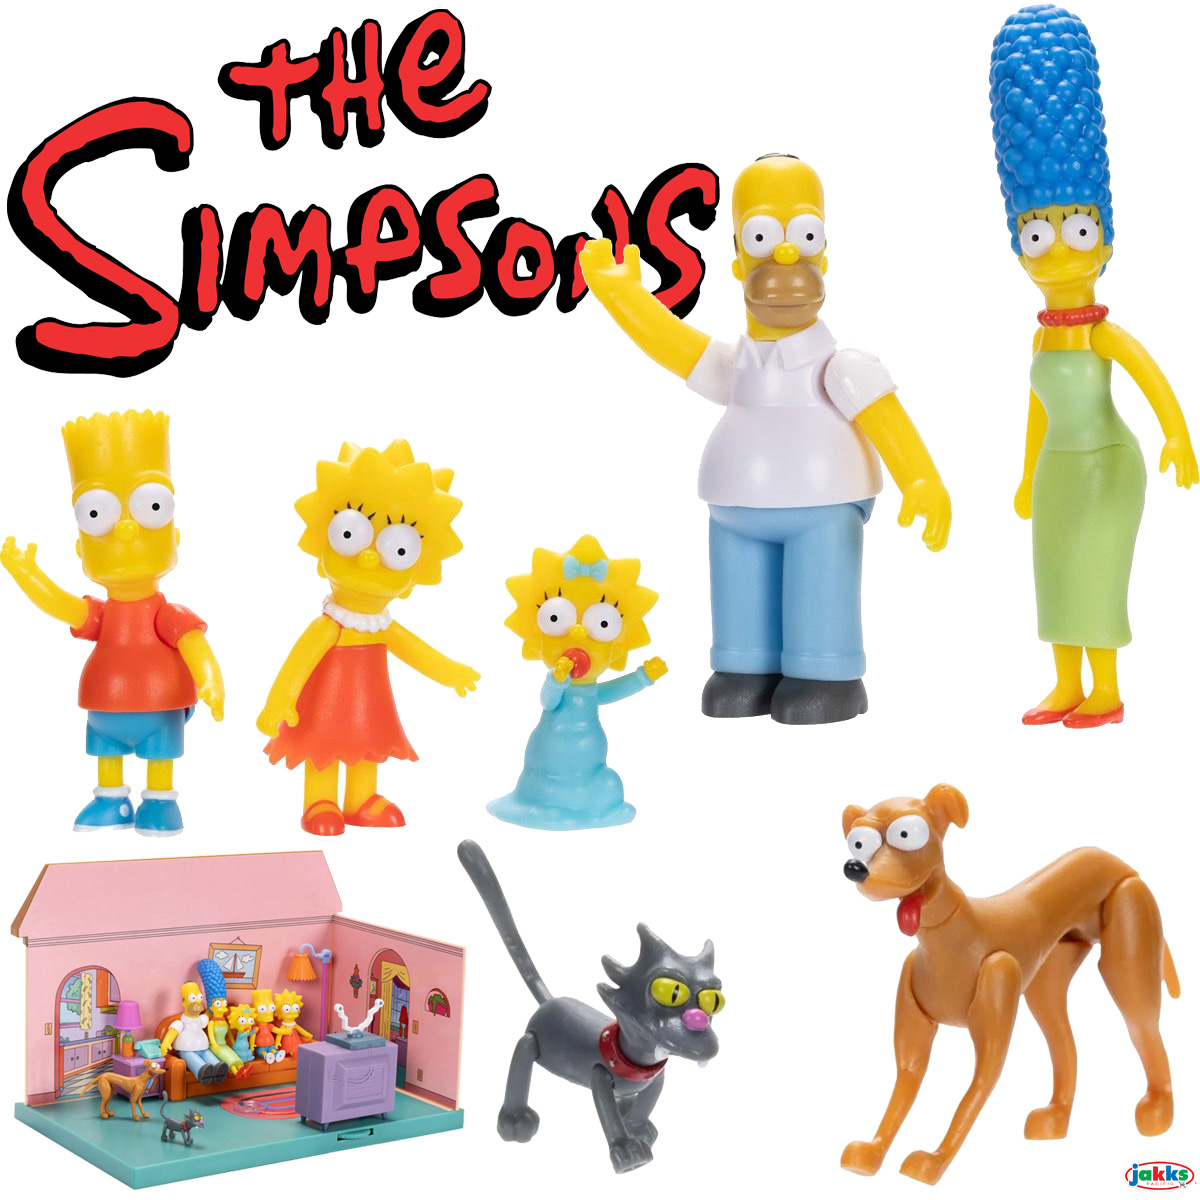 Mini-Figuras Os Simpsons com Bichos de Estimação (Playset Jakks Pacific)